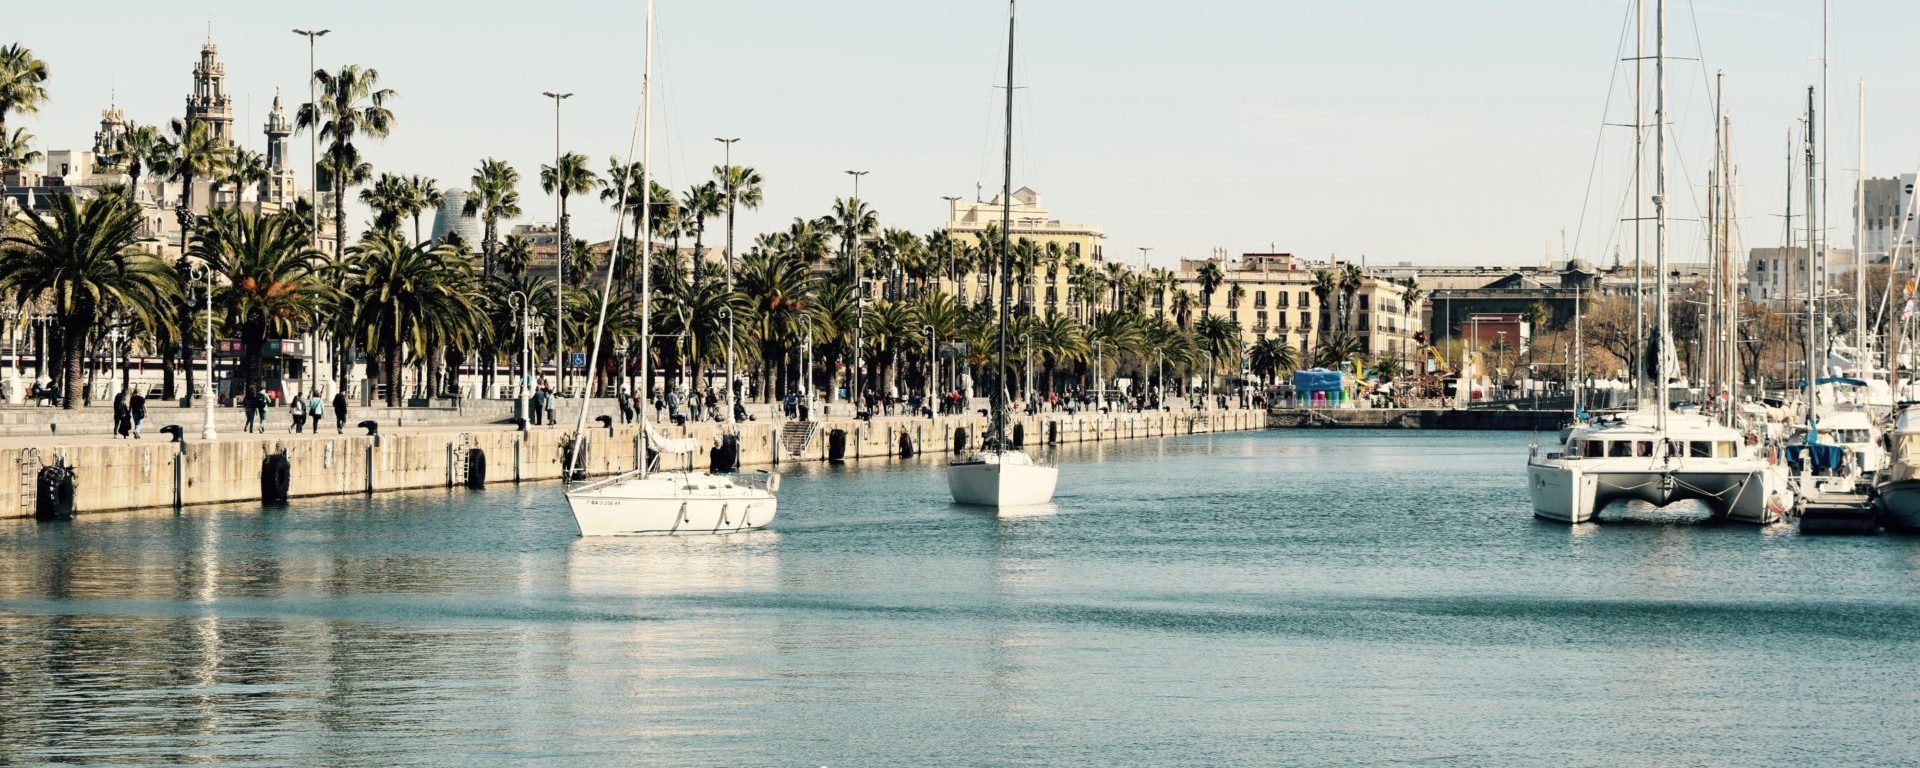 Barcelona harbour